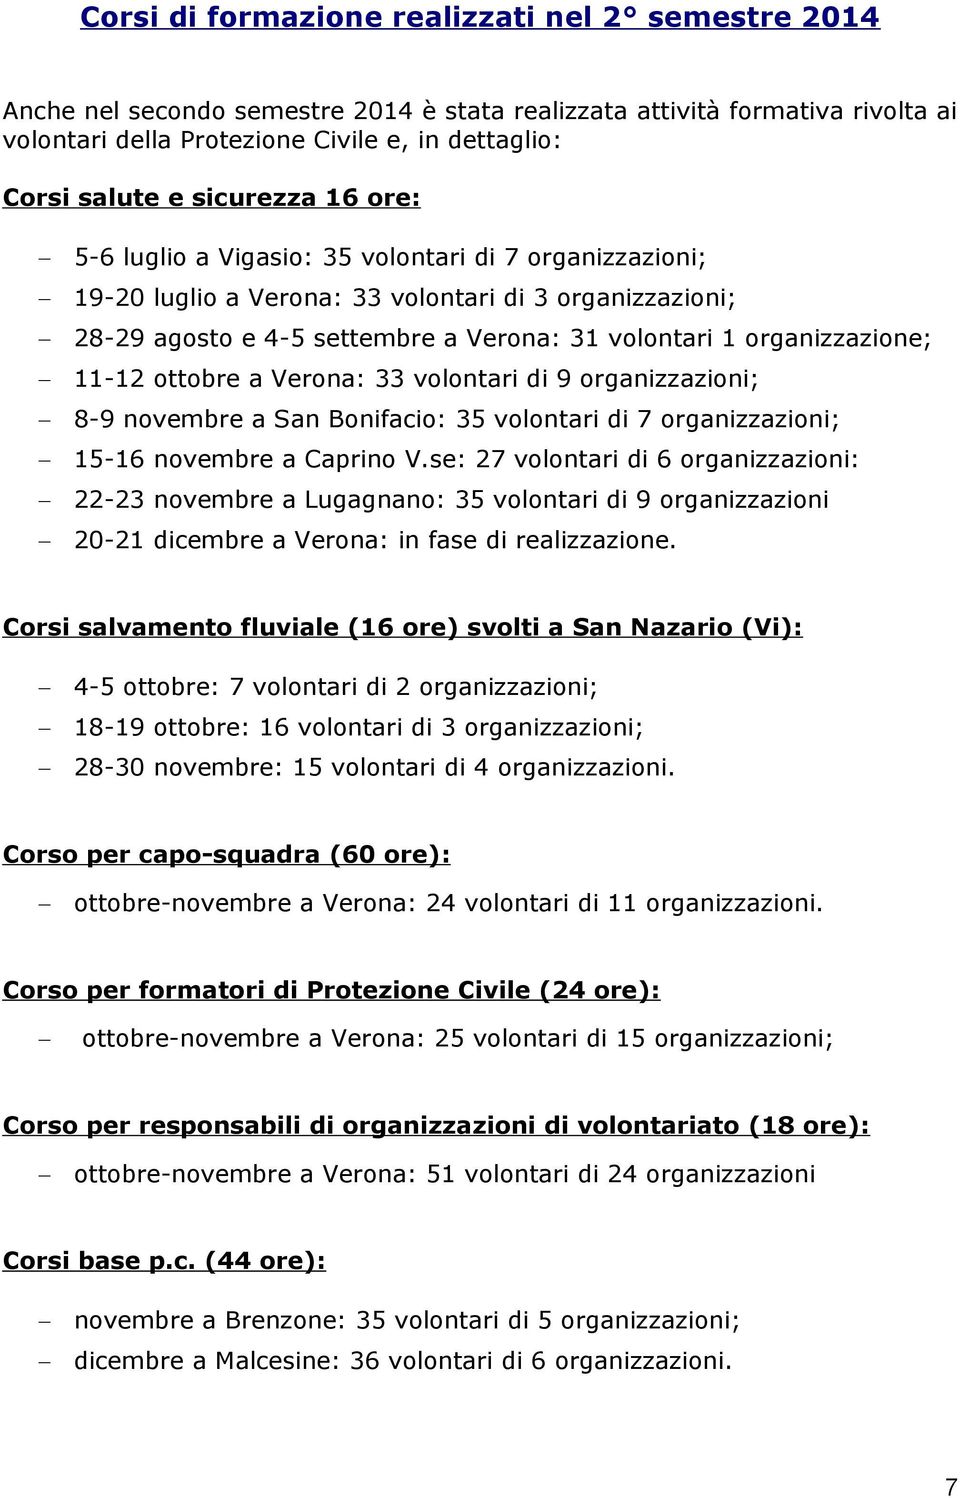 organizzazione; 11-12 ottobre a Verona: 33 volontari di 9 organizzazioni; 8-9 novembre a San Bonifacio: 35 volontari di 7 organizzazioni; 15-16 novembre a Caprino V.